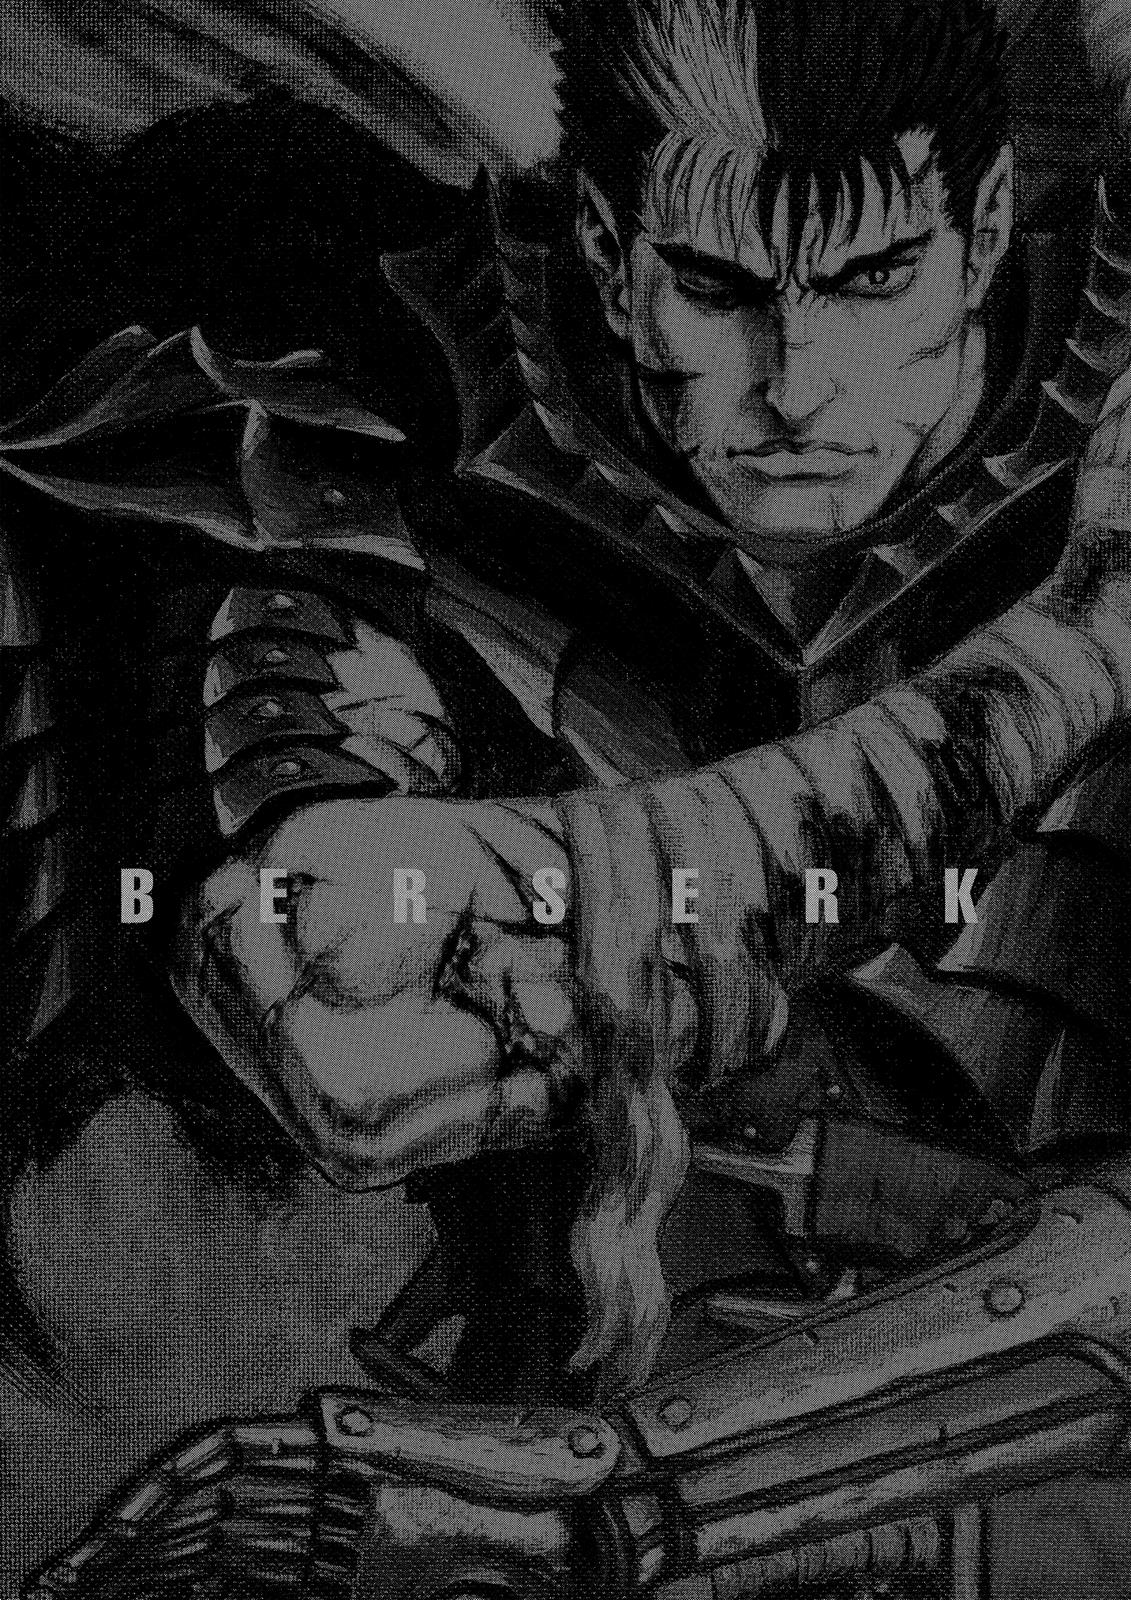 Berserk Manga Chapter 344 image 22